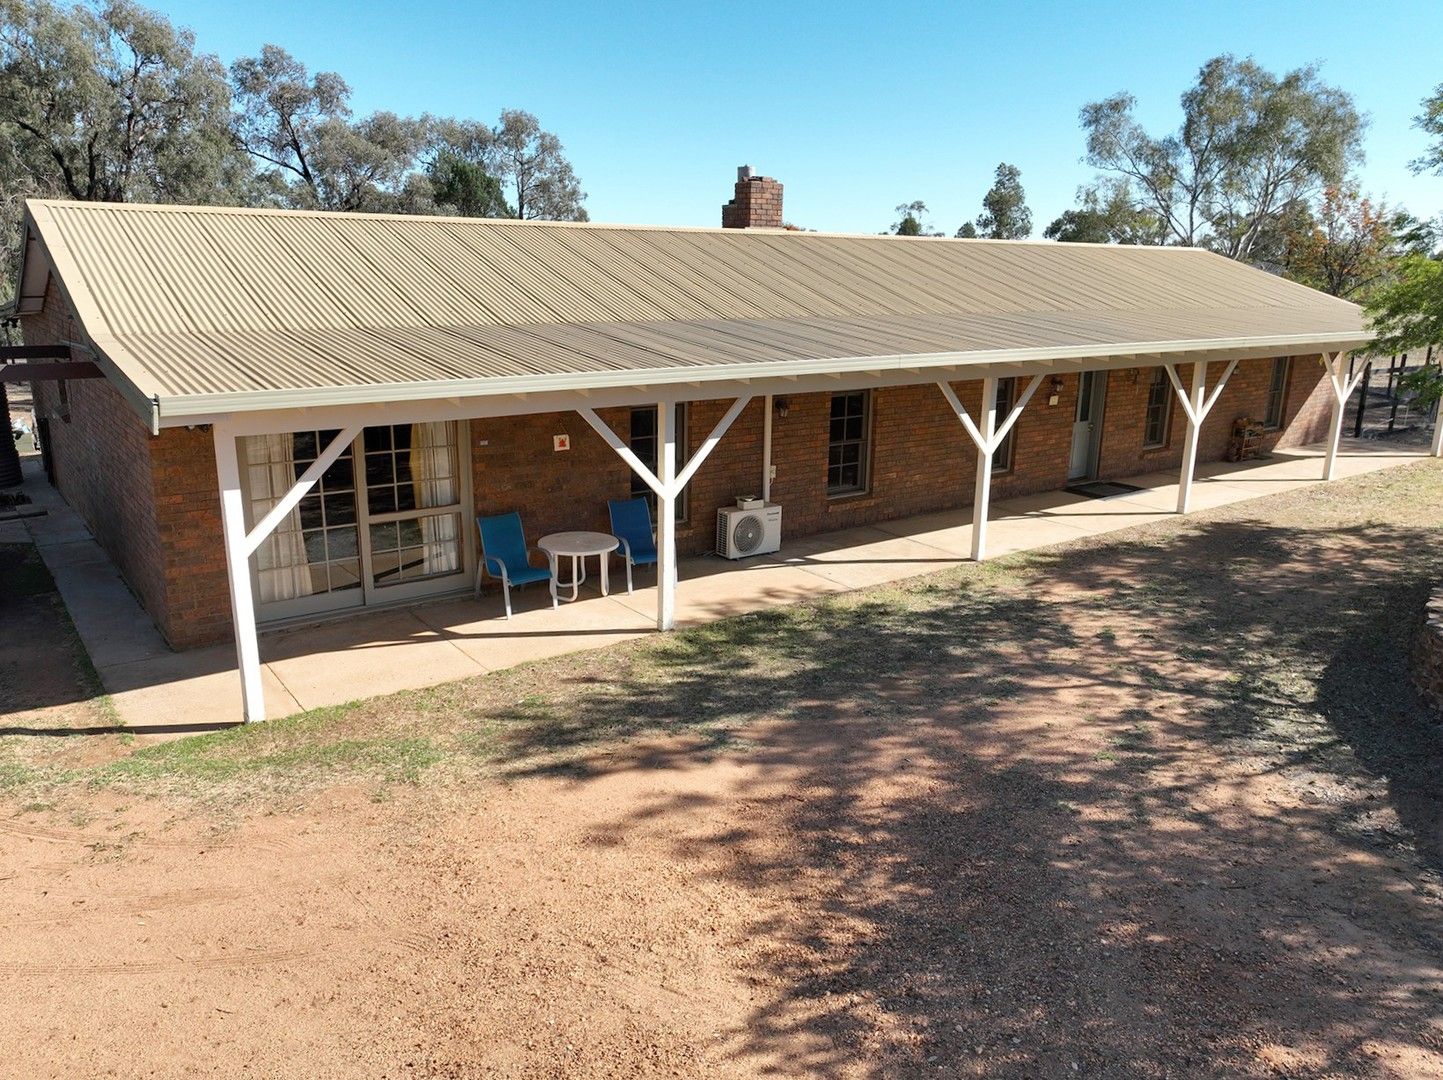 5 bedrooms Rural in 20R Ascot Park Road DUBBO NSW, 2830